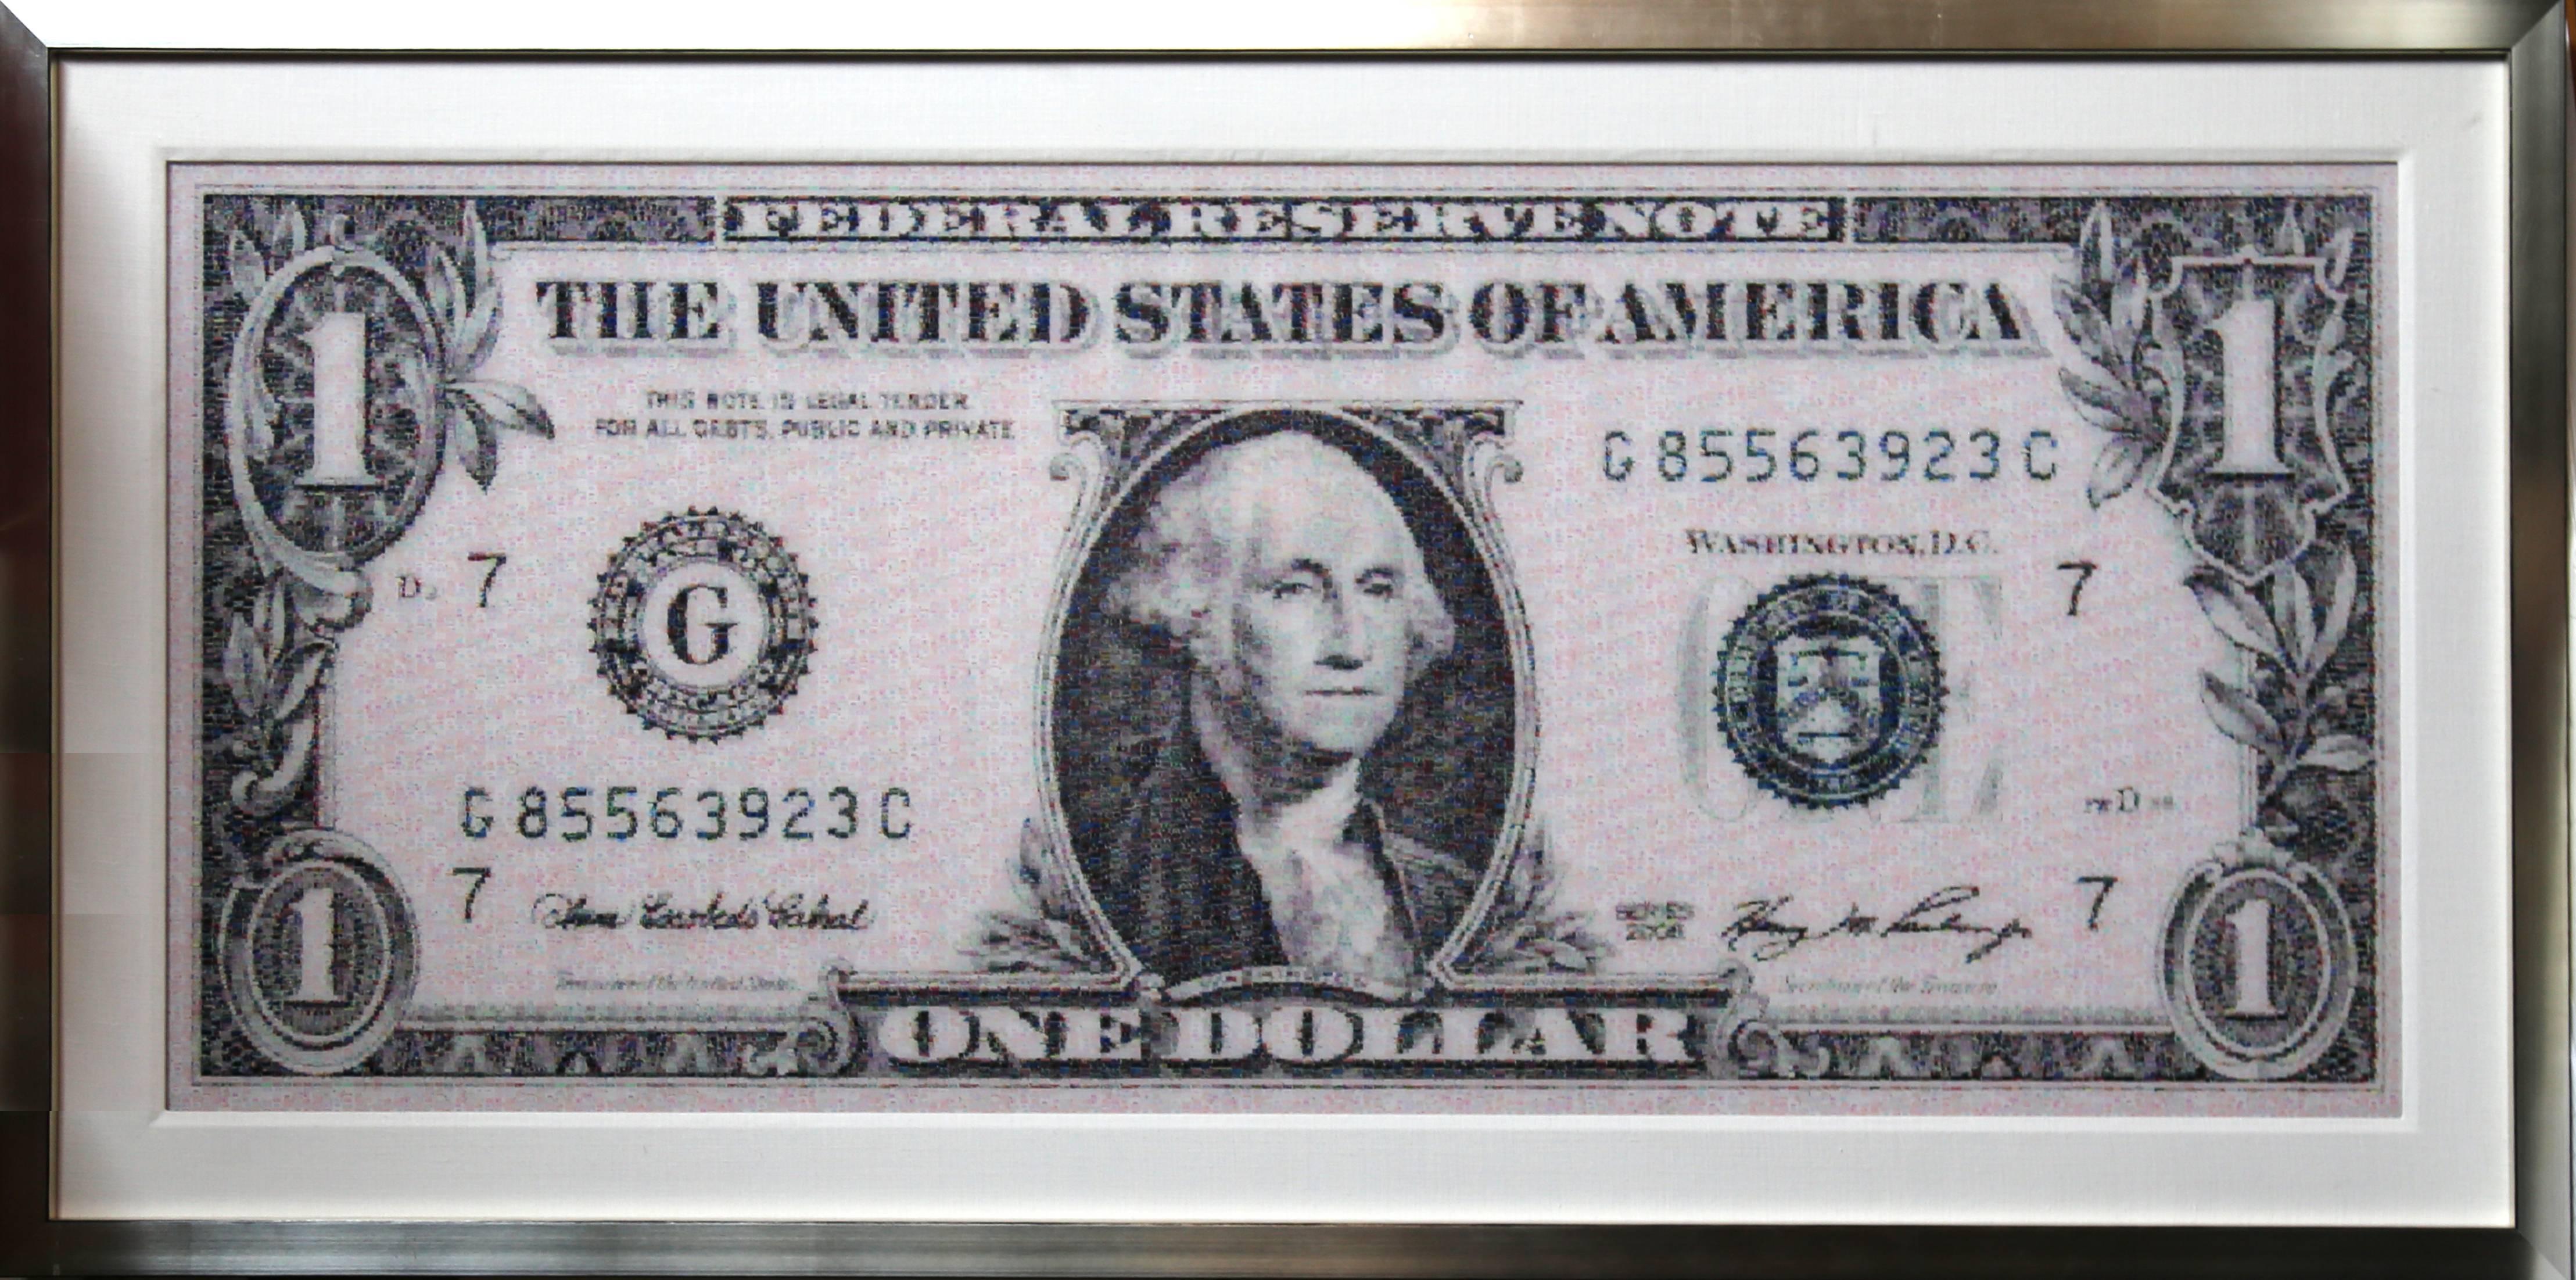 Artiste : Robert Silvers, américain (1968 - )
Titre : One Dollar Bill
Année : 2010
Médium : Photomosaïque numérique sur Fuji Crystal Archive monté sur aluminium
Edition : 10
Taille : 27 x 63 in. (68,58 x 160,02 cm)
Cadre : 35 x 71.5 x 2.25 pouces